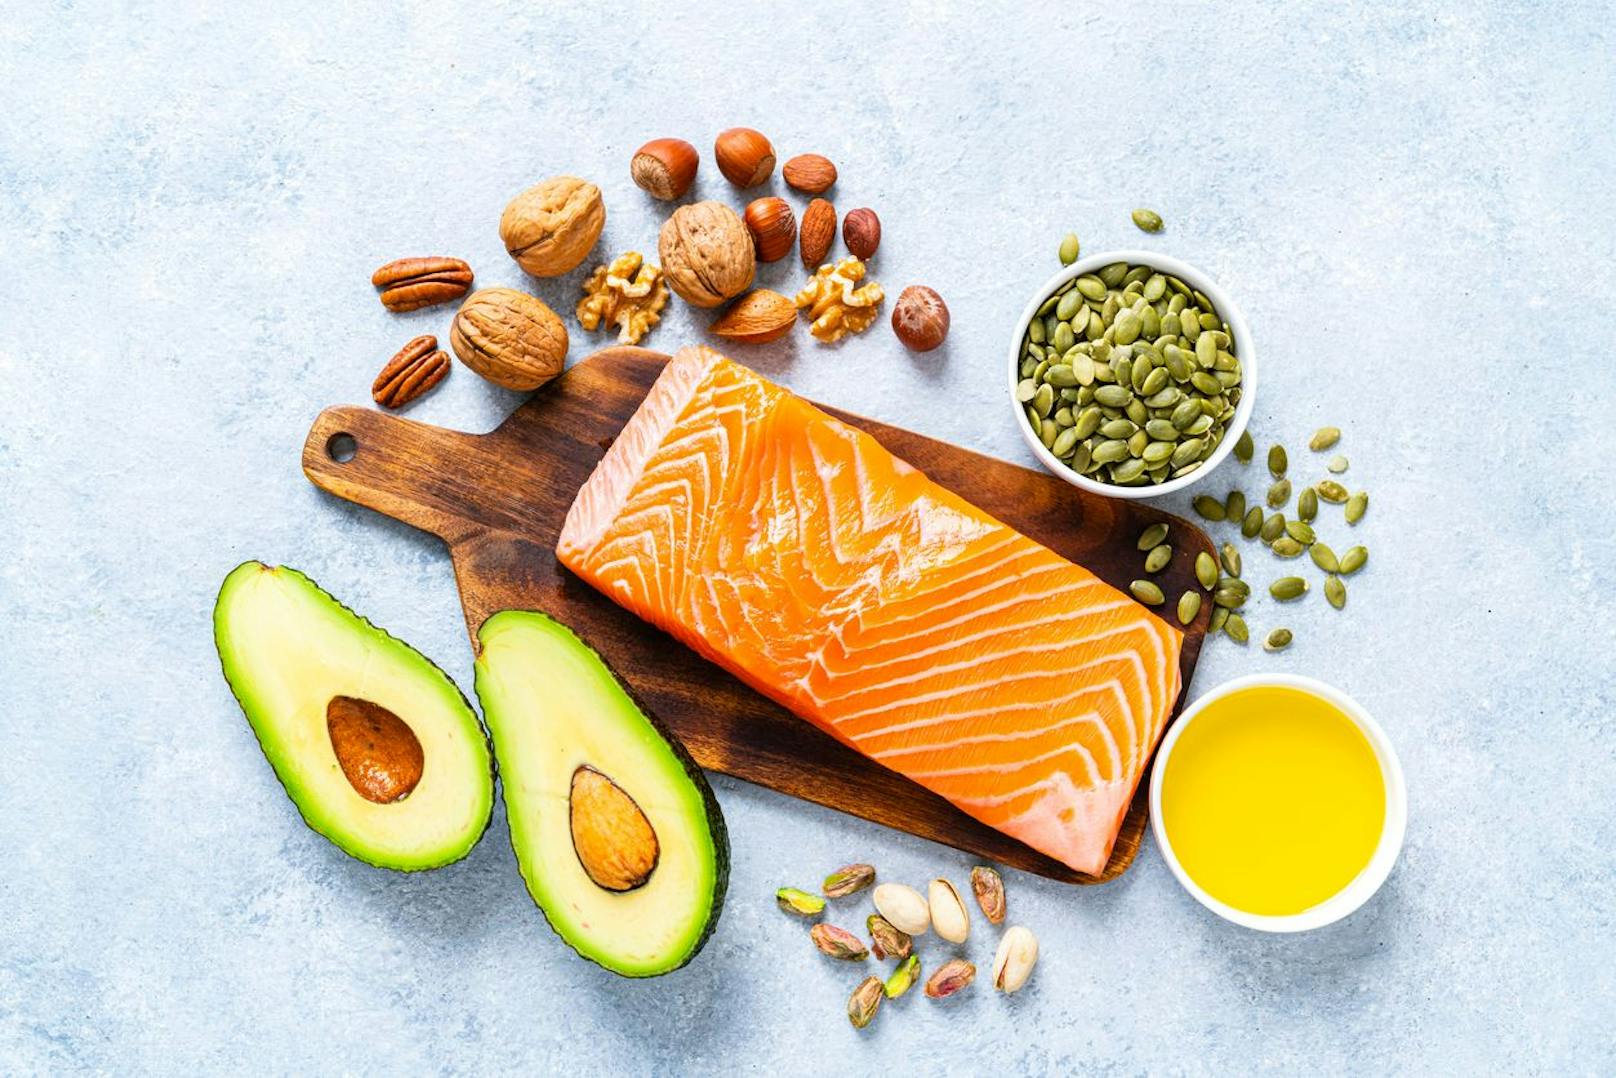 Um dein körpereigenes Fett loszuwerden musst du nicht komplett auf anderes Fett verzichten. Proteine und Omega-3 haltige Säuren können in Gerichten wie Fisch gefunden werden. Diese fördern deine Verdauung and verhindern, das Entstehen von ungesundem Fett.